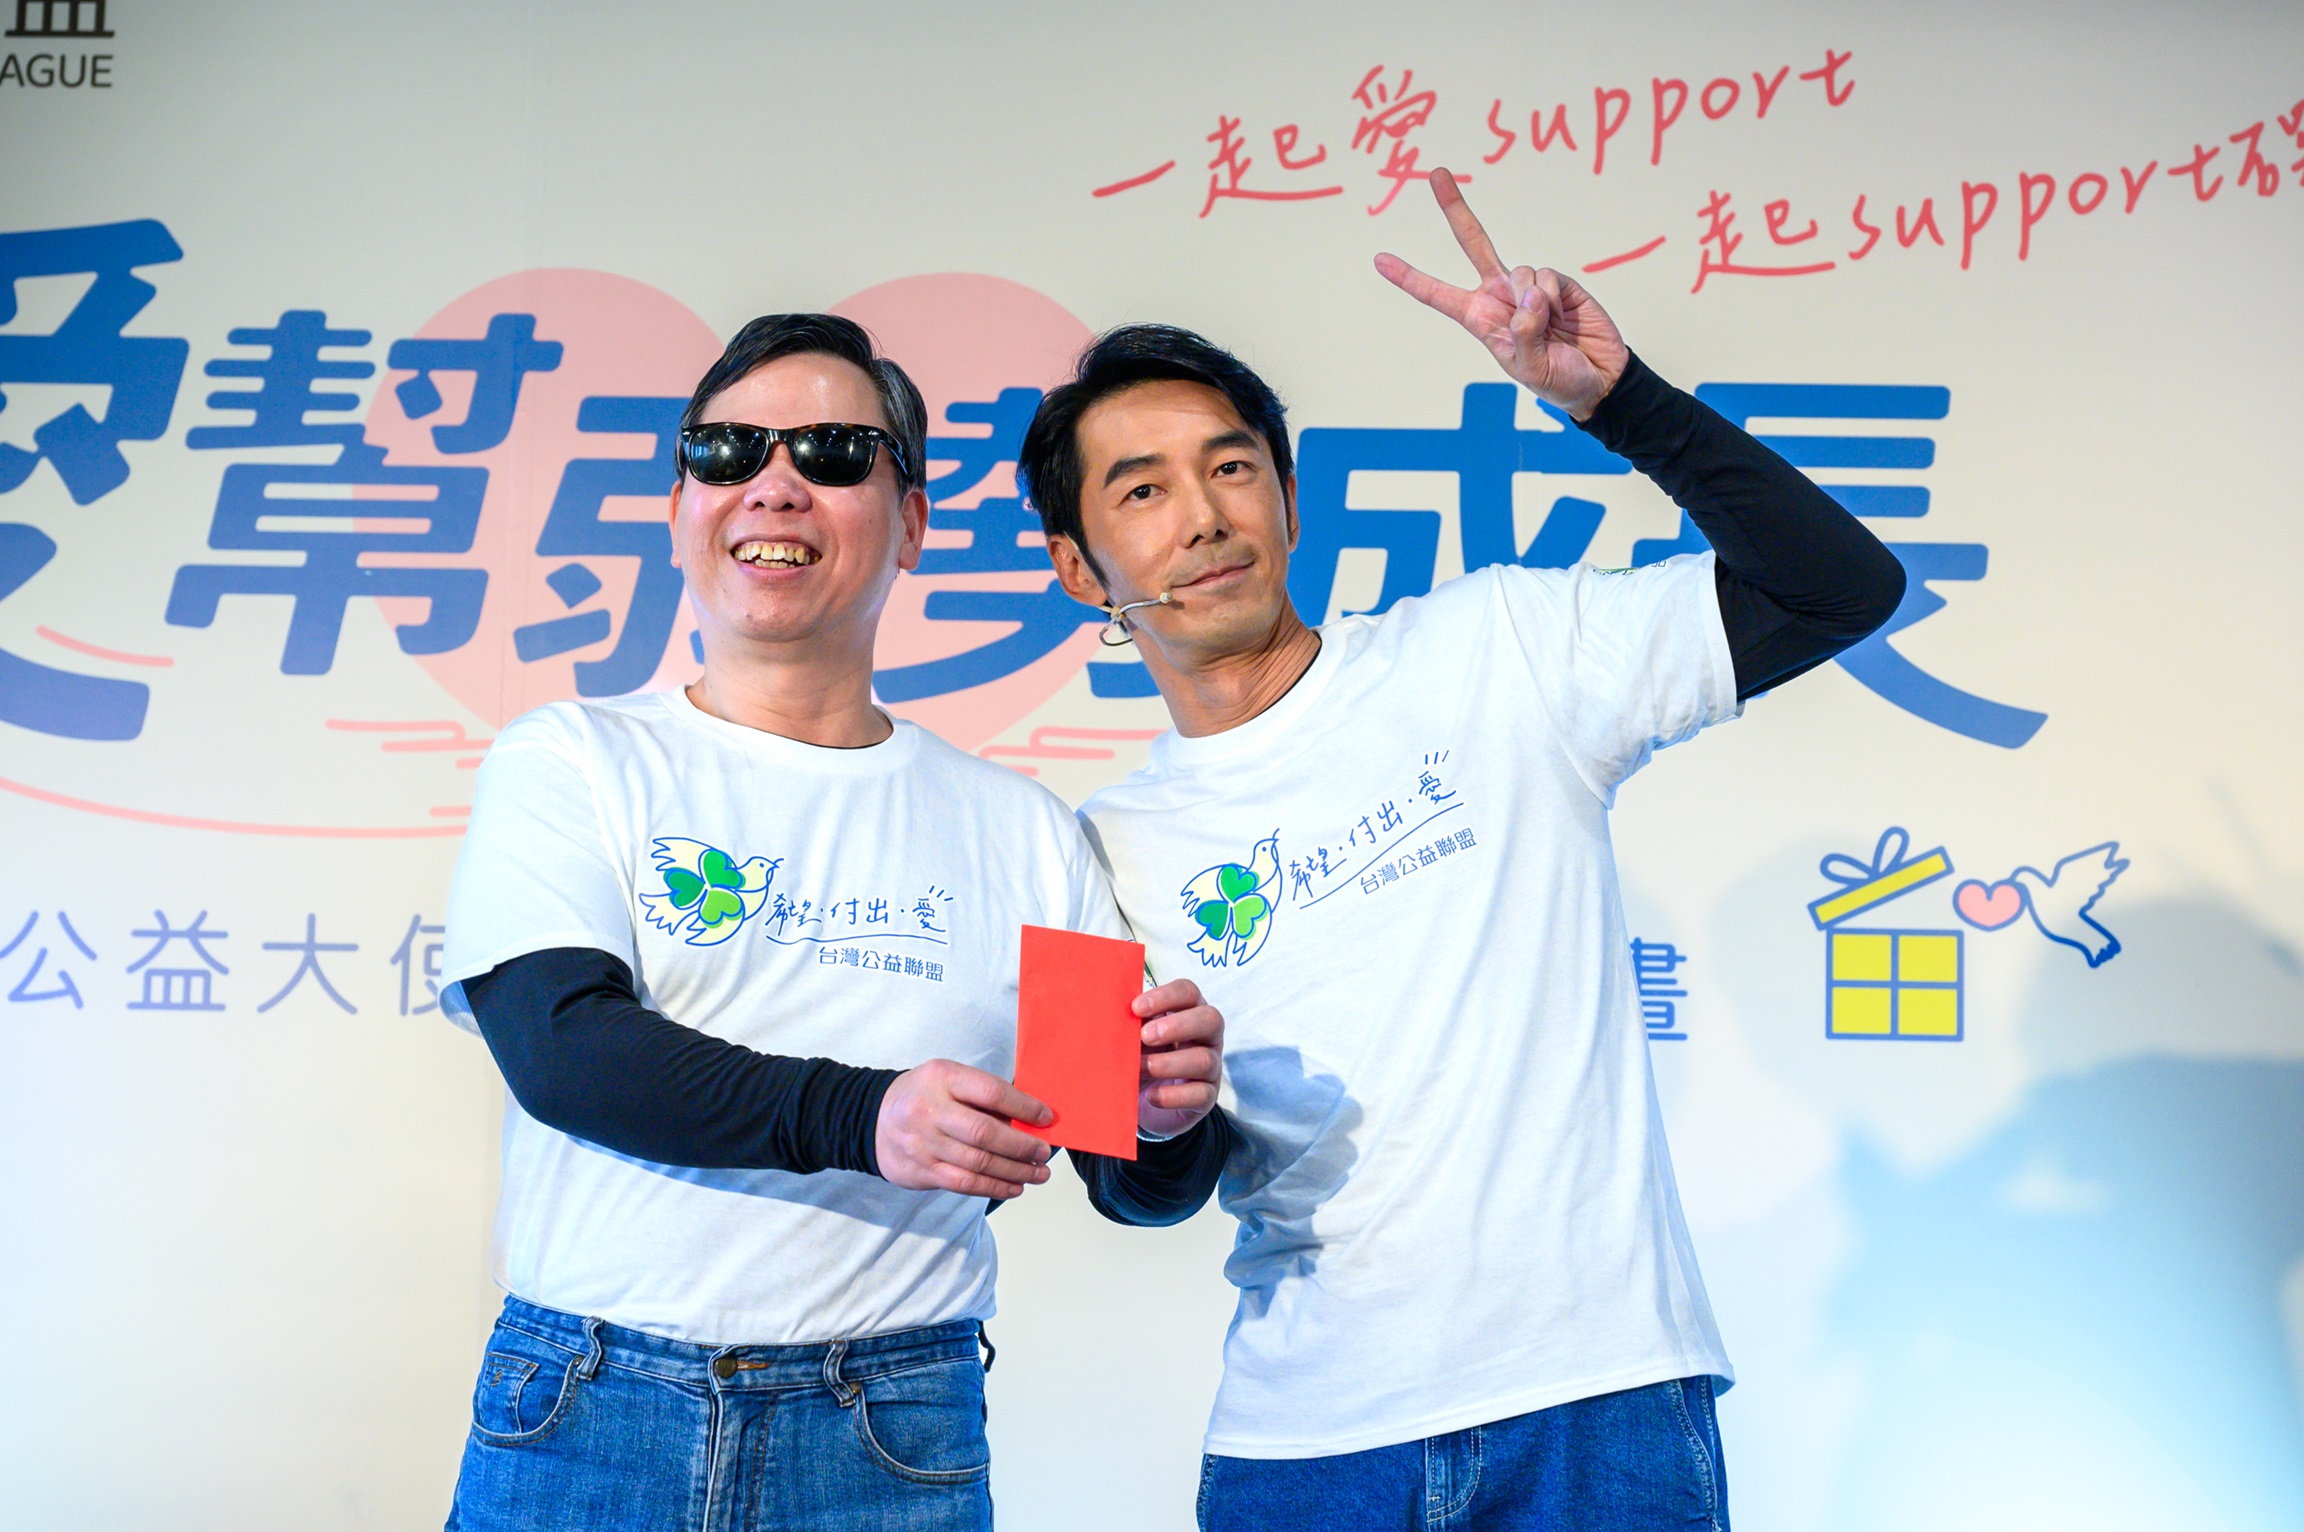 李 李 仁 現 場 捐 贈 1 6 8 0 0 元 紅 包 ， 成 為 台 灣 公 益 聯 盟 於 2 月 1 日 啟 動 的 2 0 2 4 公 益 勸 募 字 號 「 第 1 1 2 1 3 6 4 9 1 4 號 」 第 一 位 搶 頭 香 的 捐 款 人 